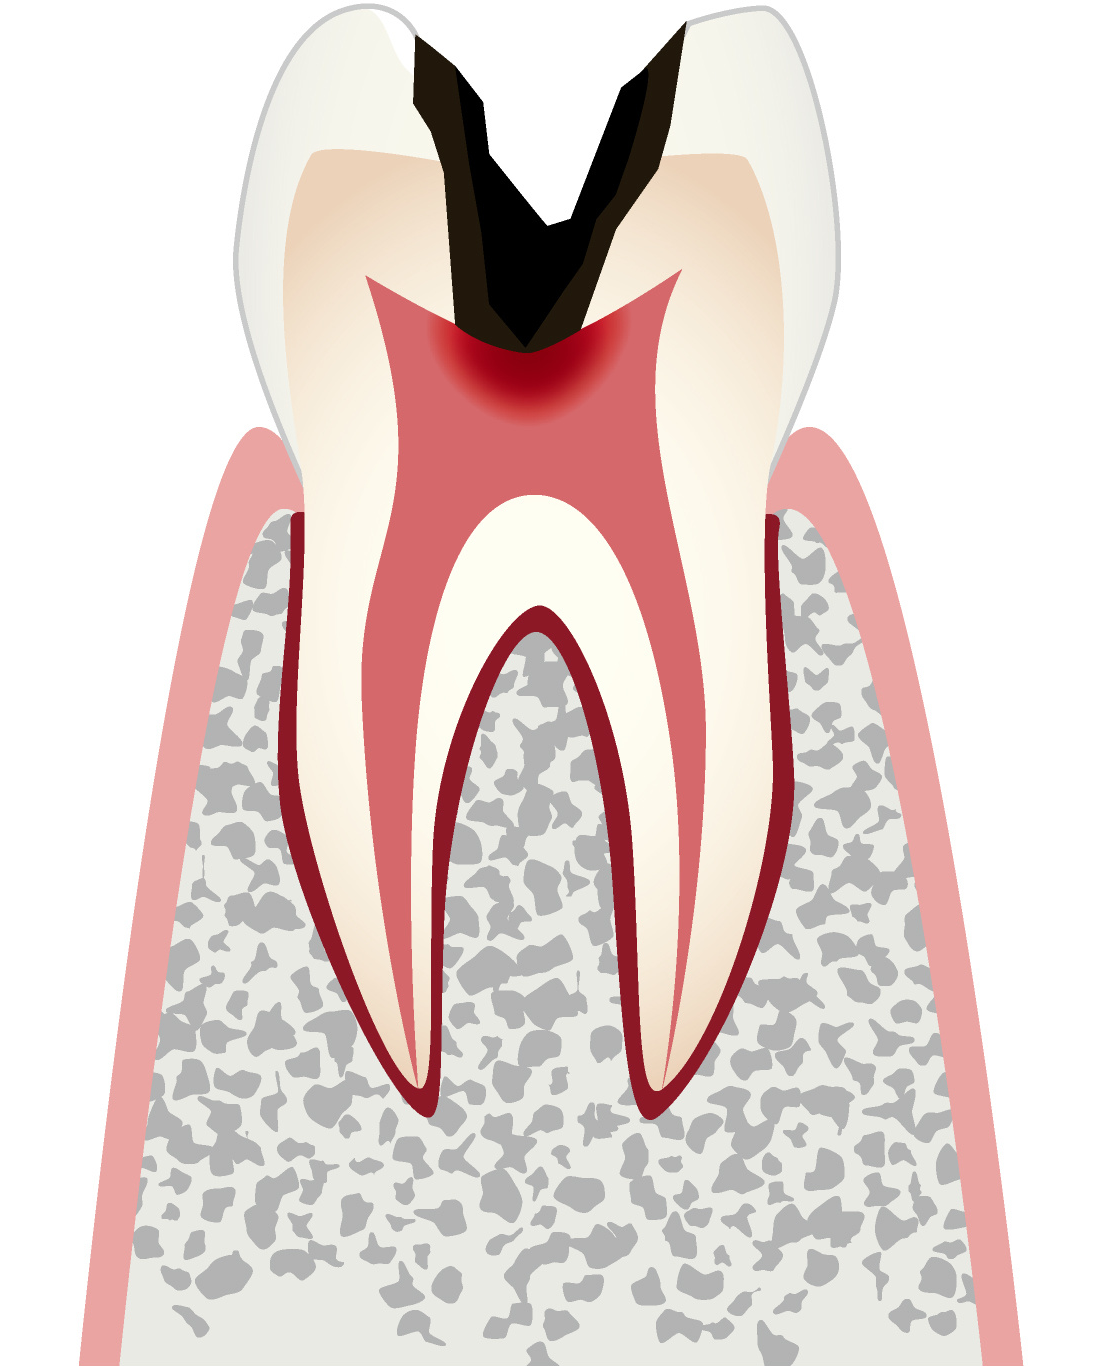 C3 歯髄に達した虫歯